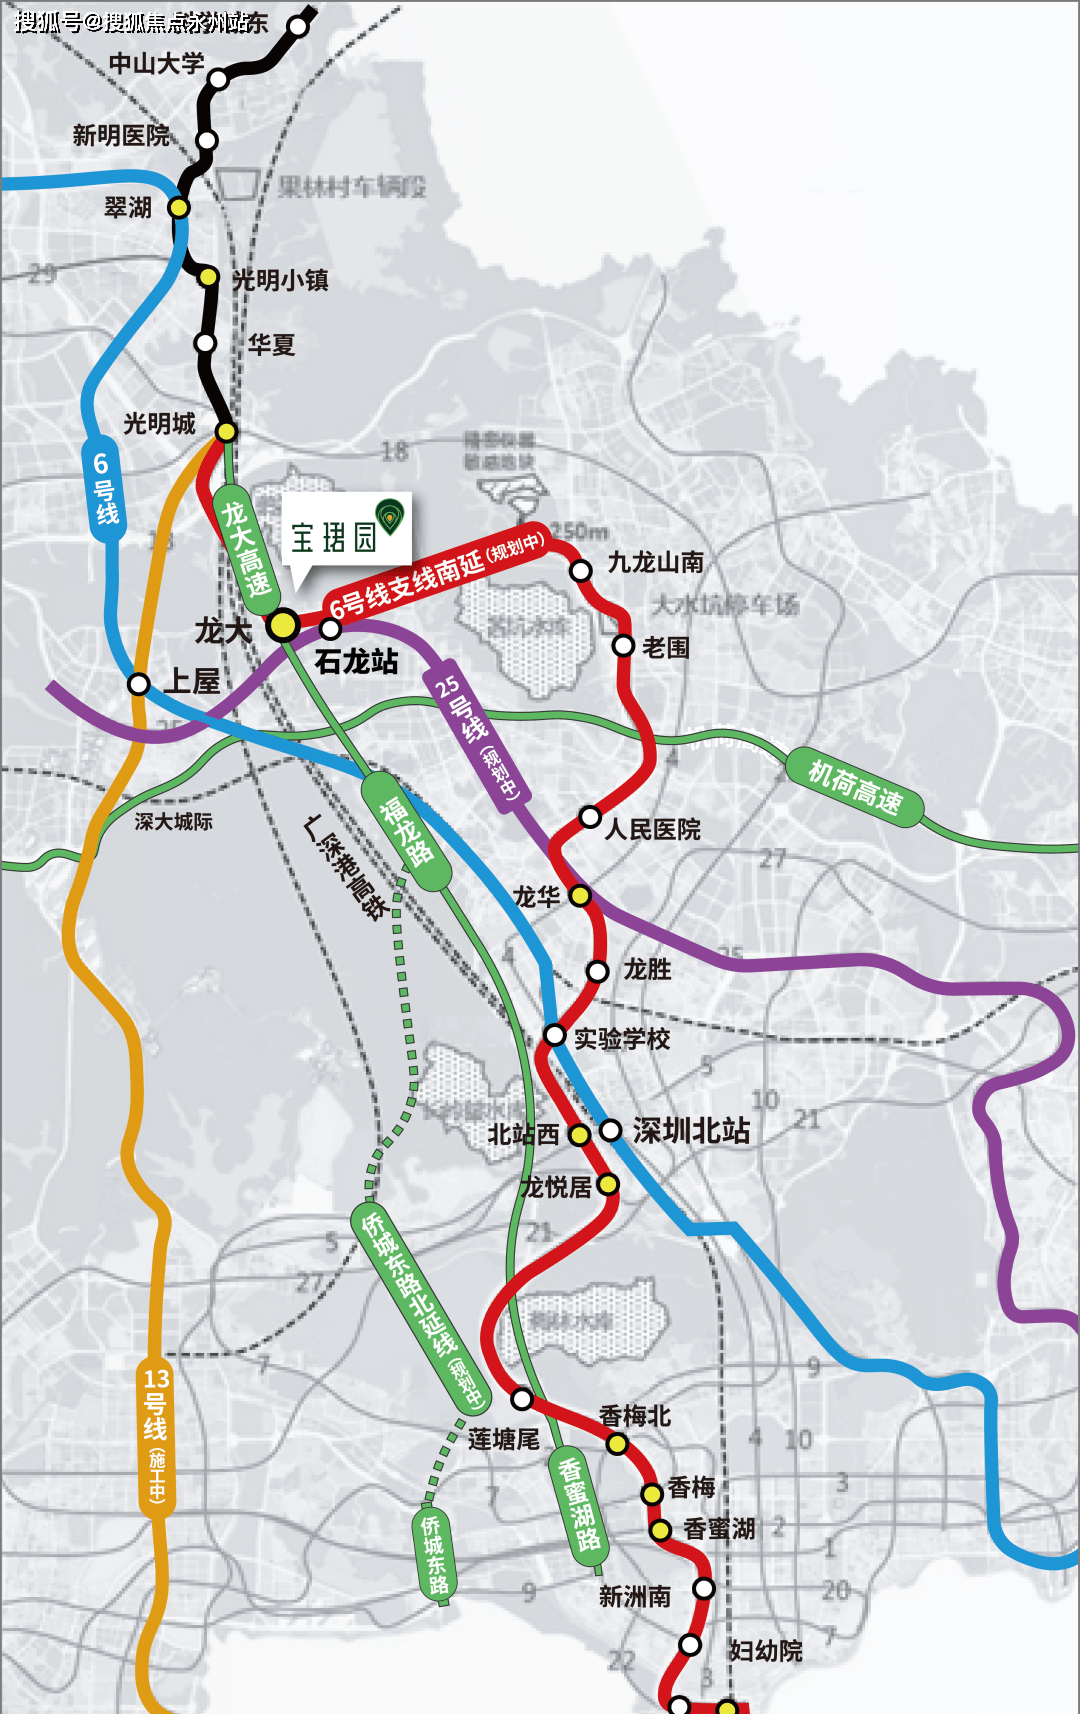 项目临近地铁6号线上屋站,官田站,13号线(在建中),范围500米之内规划